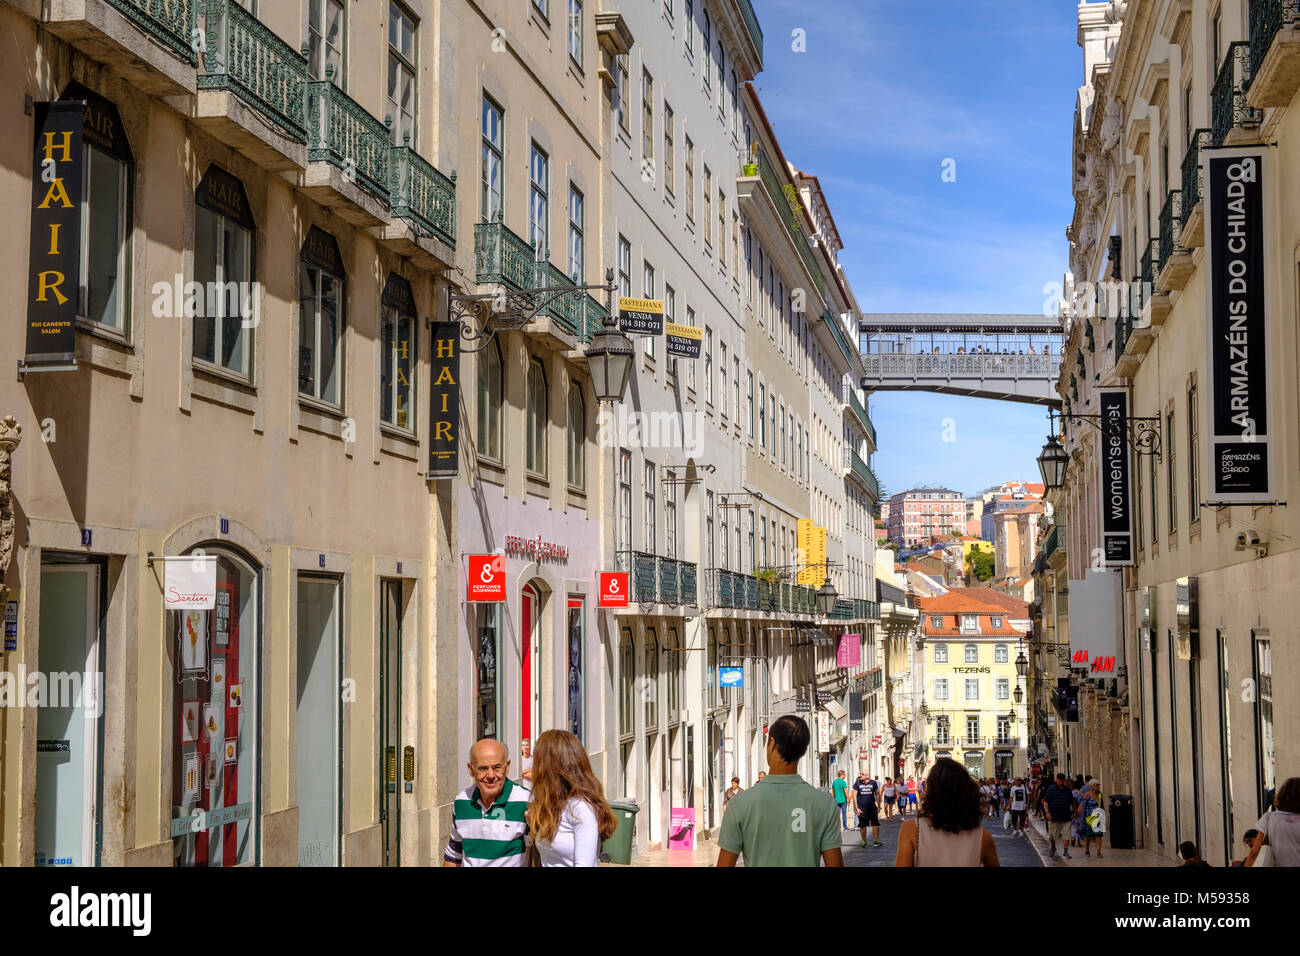 Arquitectura y calles de barrio de Chiado, Lisboa, Portugal Foto de stock